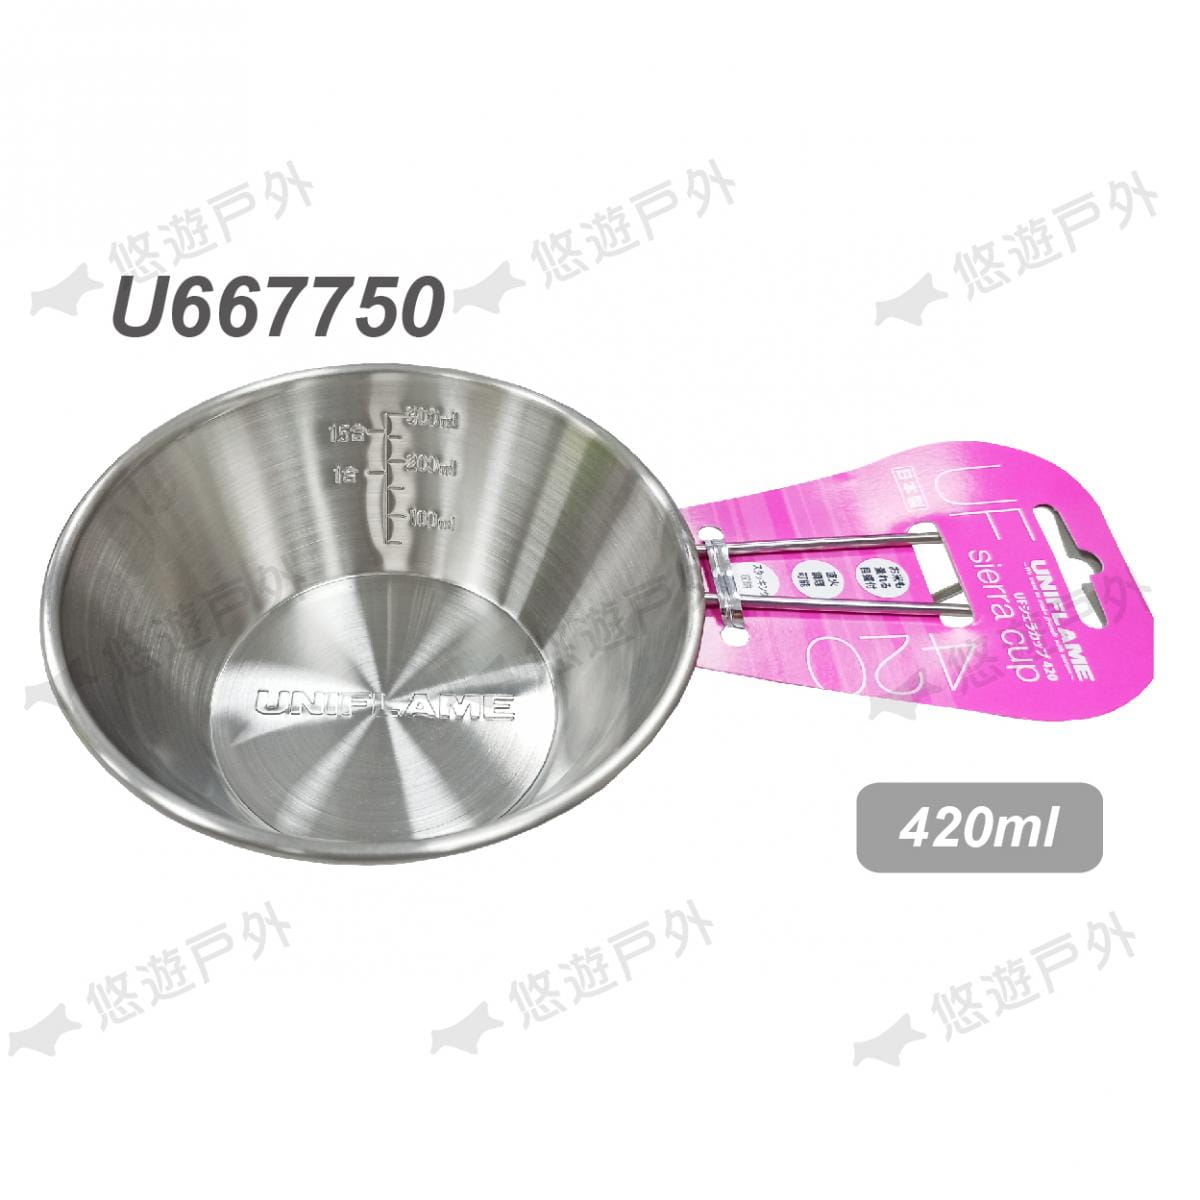 【UNIFLAME】U667750 日本 燕三條不鏽鋼提耳碗420ml 燕三條製 不銹鋼 提耳碗 4